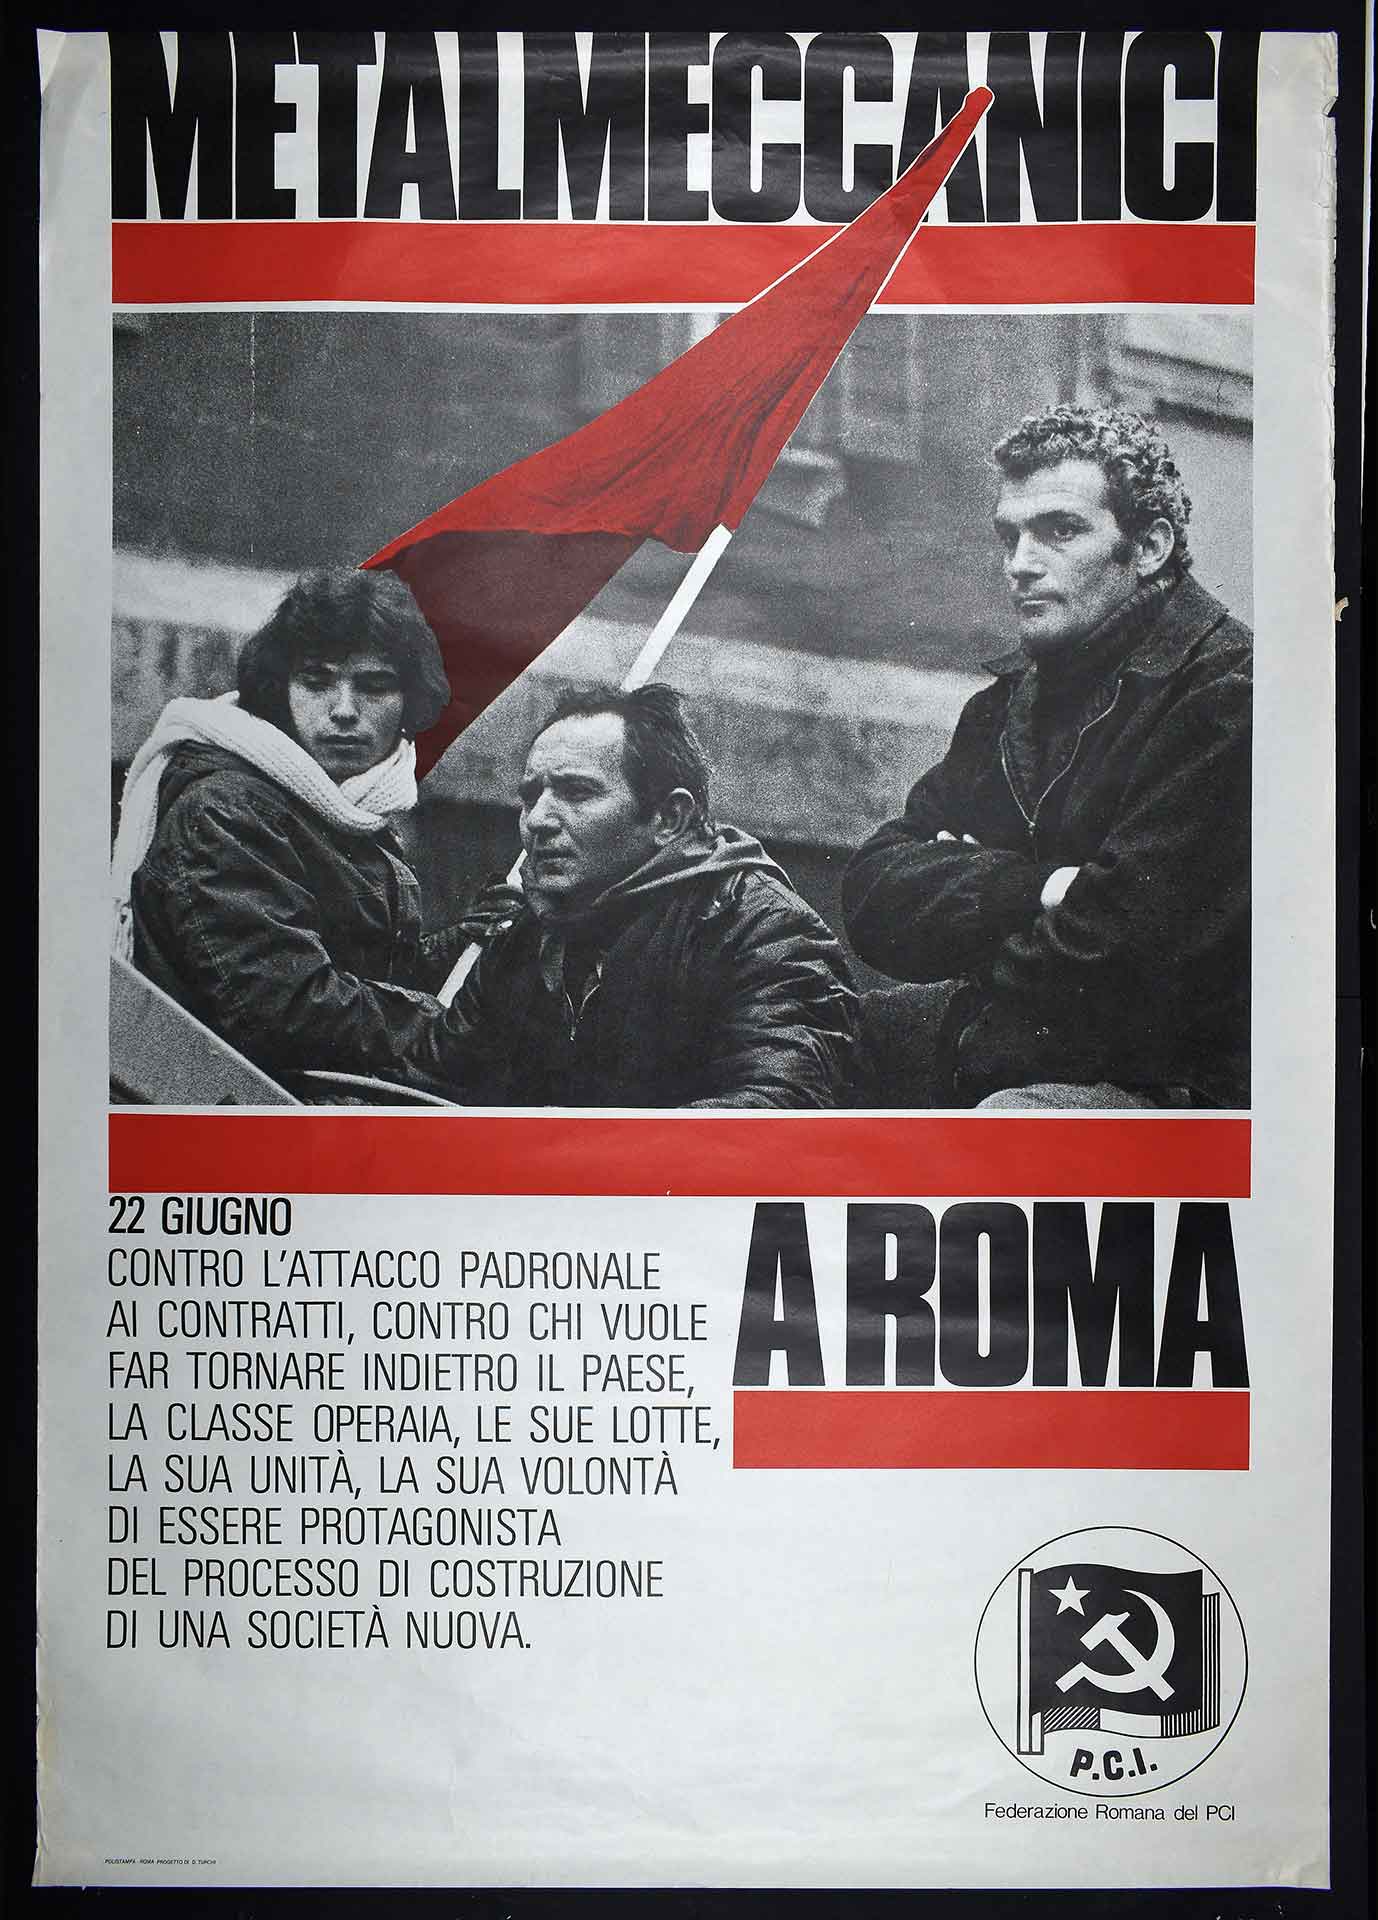 La Federazione romana del Partito comunista italiano (PCI) per la manifestazione dei metalmeccanici a Roma del 22 giugno 1979. Stampa Polistampa, Roma. Progetto di D. Turchi. Movimento sindacale.